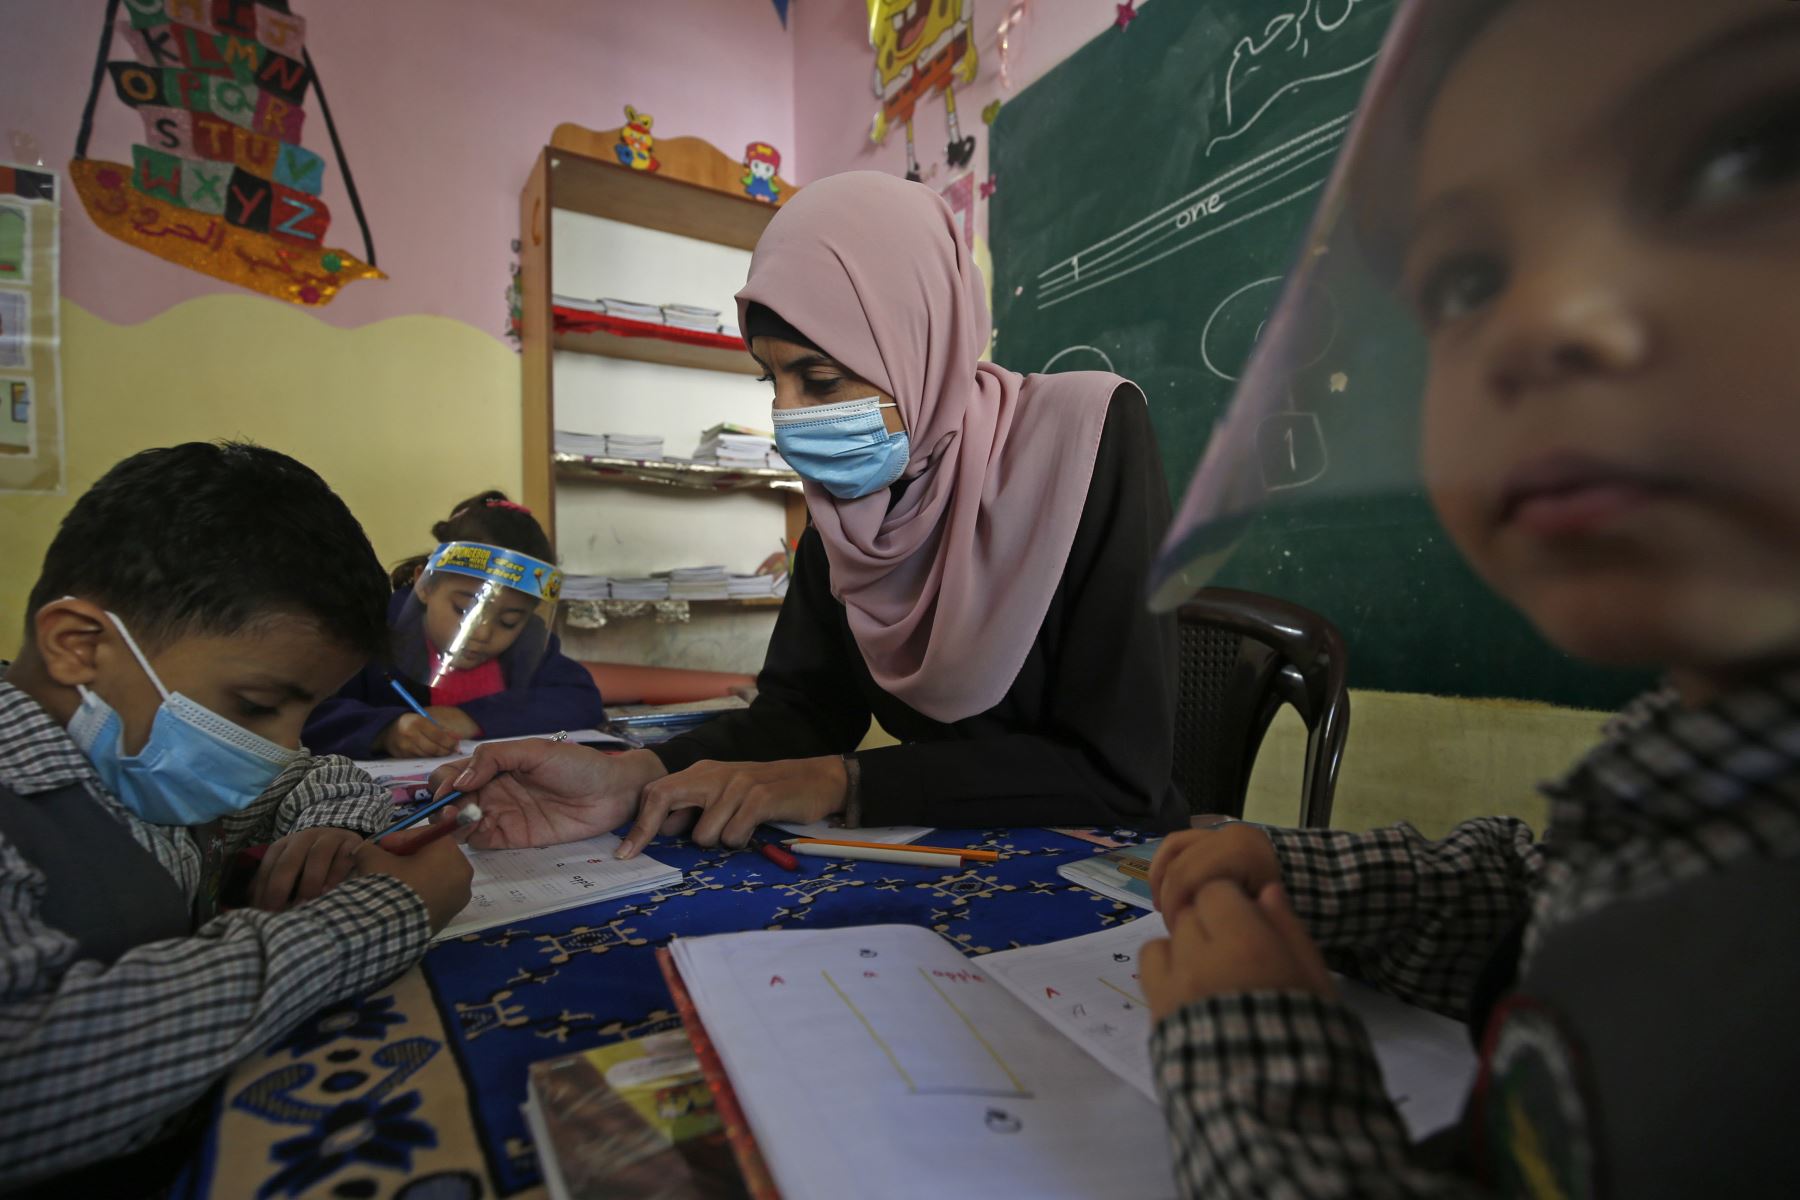 Los niños palestinos participan en una clase con máscaras y protectores faciales debido a la pandemia de Covid-19, en un jardín de infancia en la ciudad de Gaza. Foto: AFP